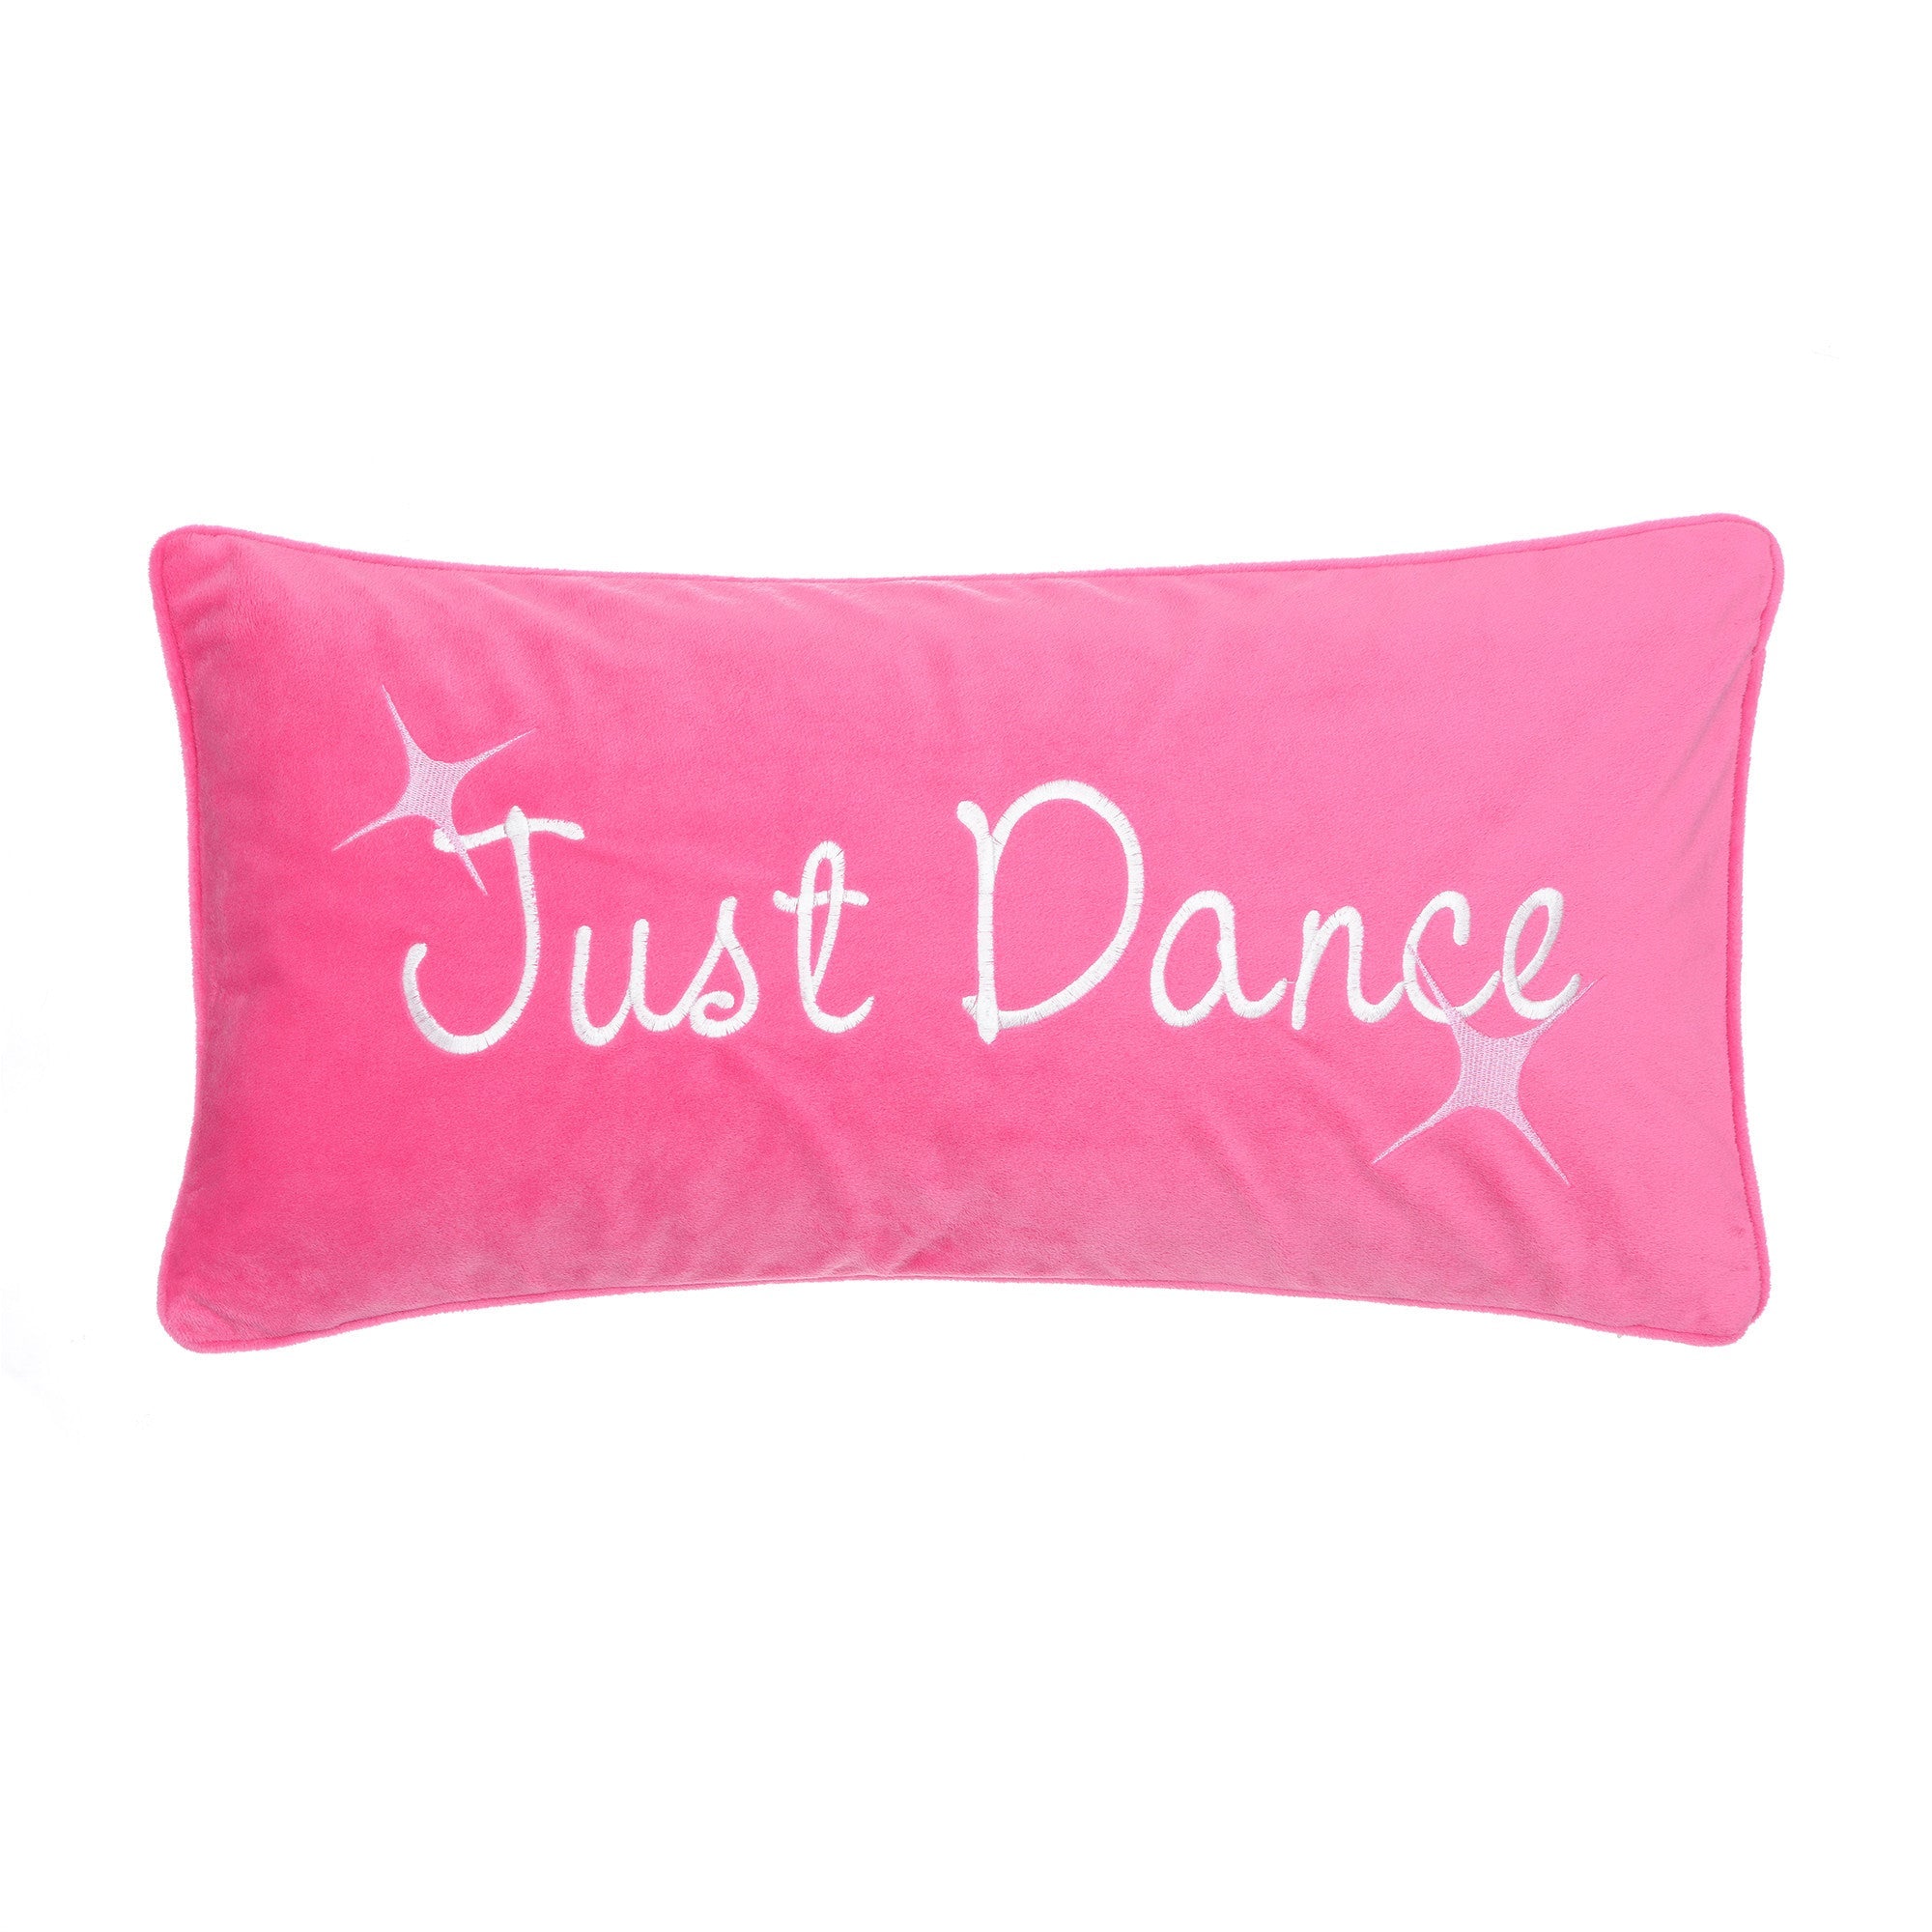 Merrill Girl Just Dance Pillow